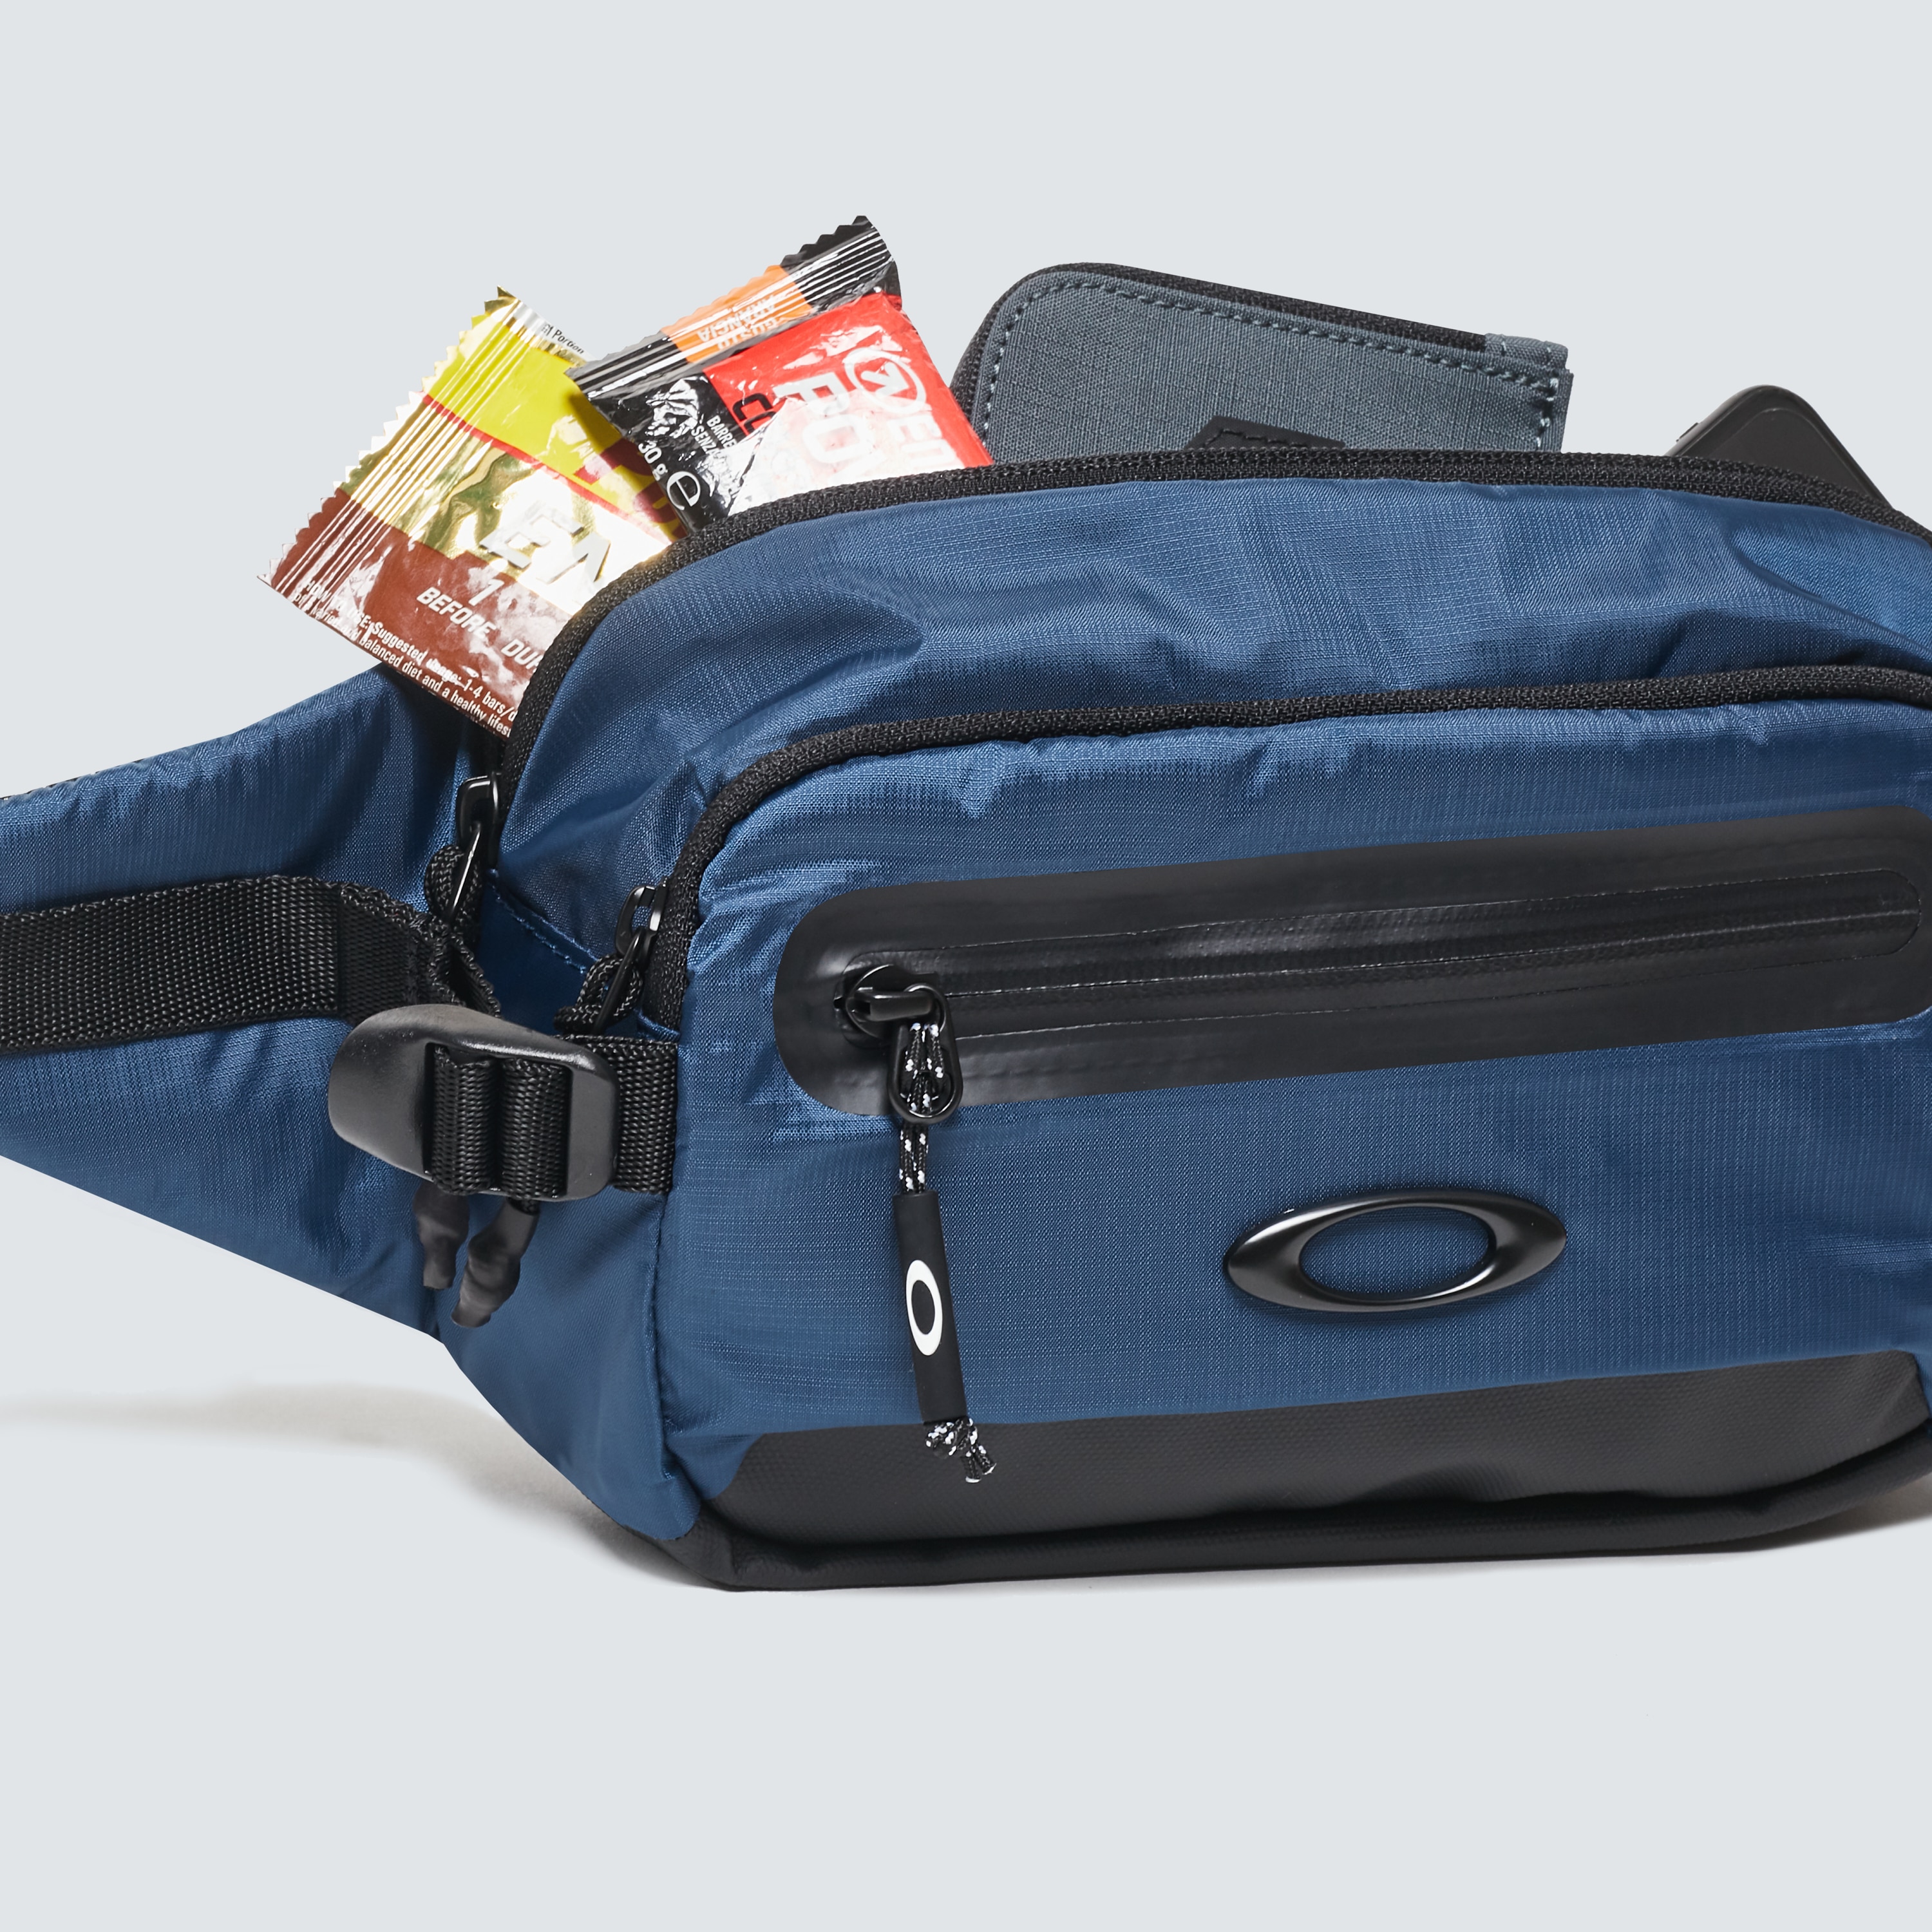 Oakley Outdoor Belt Bag - Universal 